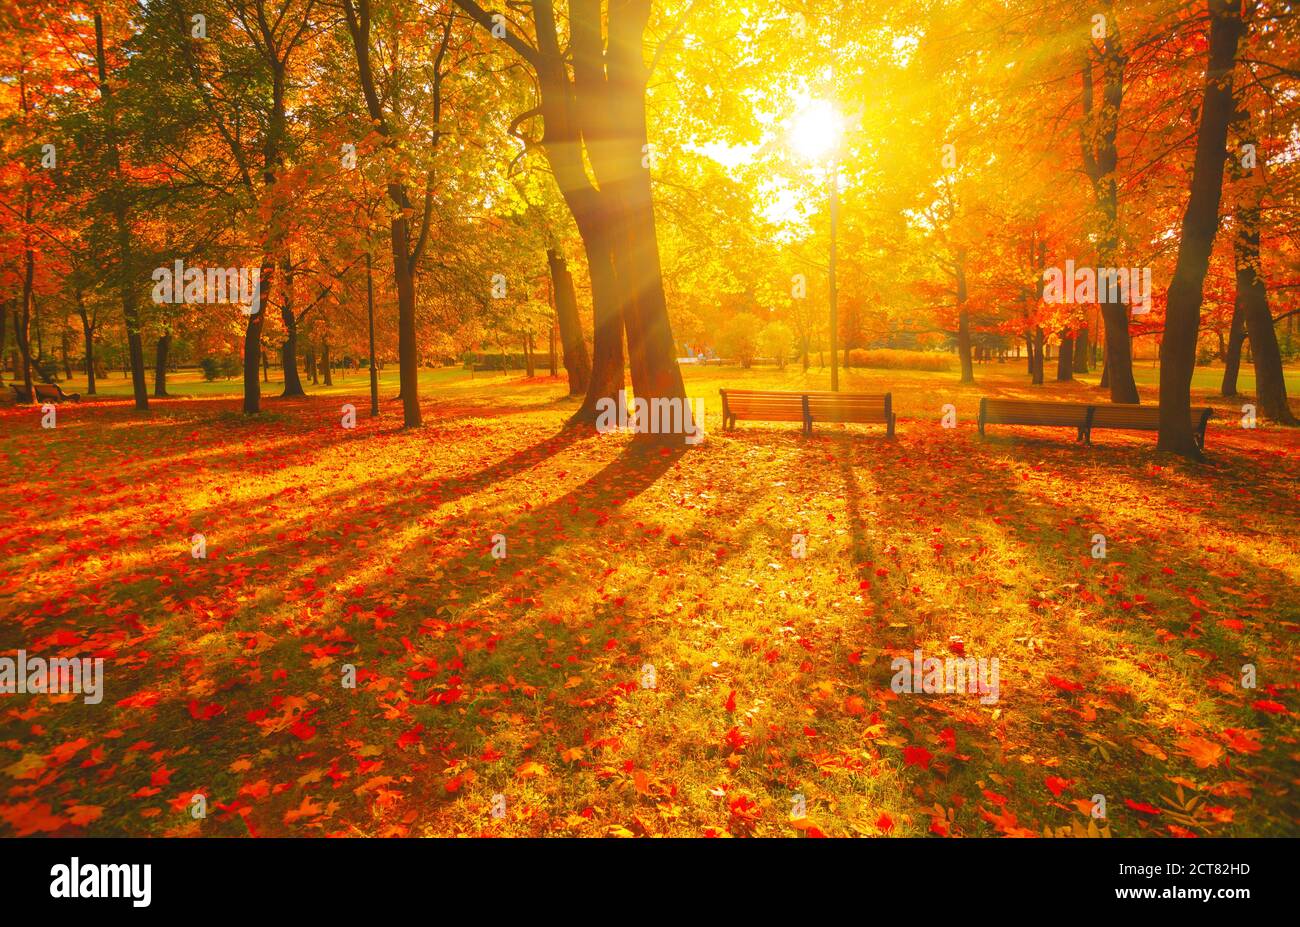 Herbstlicher Pfad. Orange Farbe Baum, rot braun Ahornblätter im Herbst Stadtpark. Szene in Sonnenuntergang Nebel Holzbank in szenischer Landschaft helle Sonne, sonnige Tagesansicht. Stockfoto